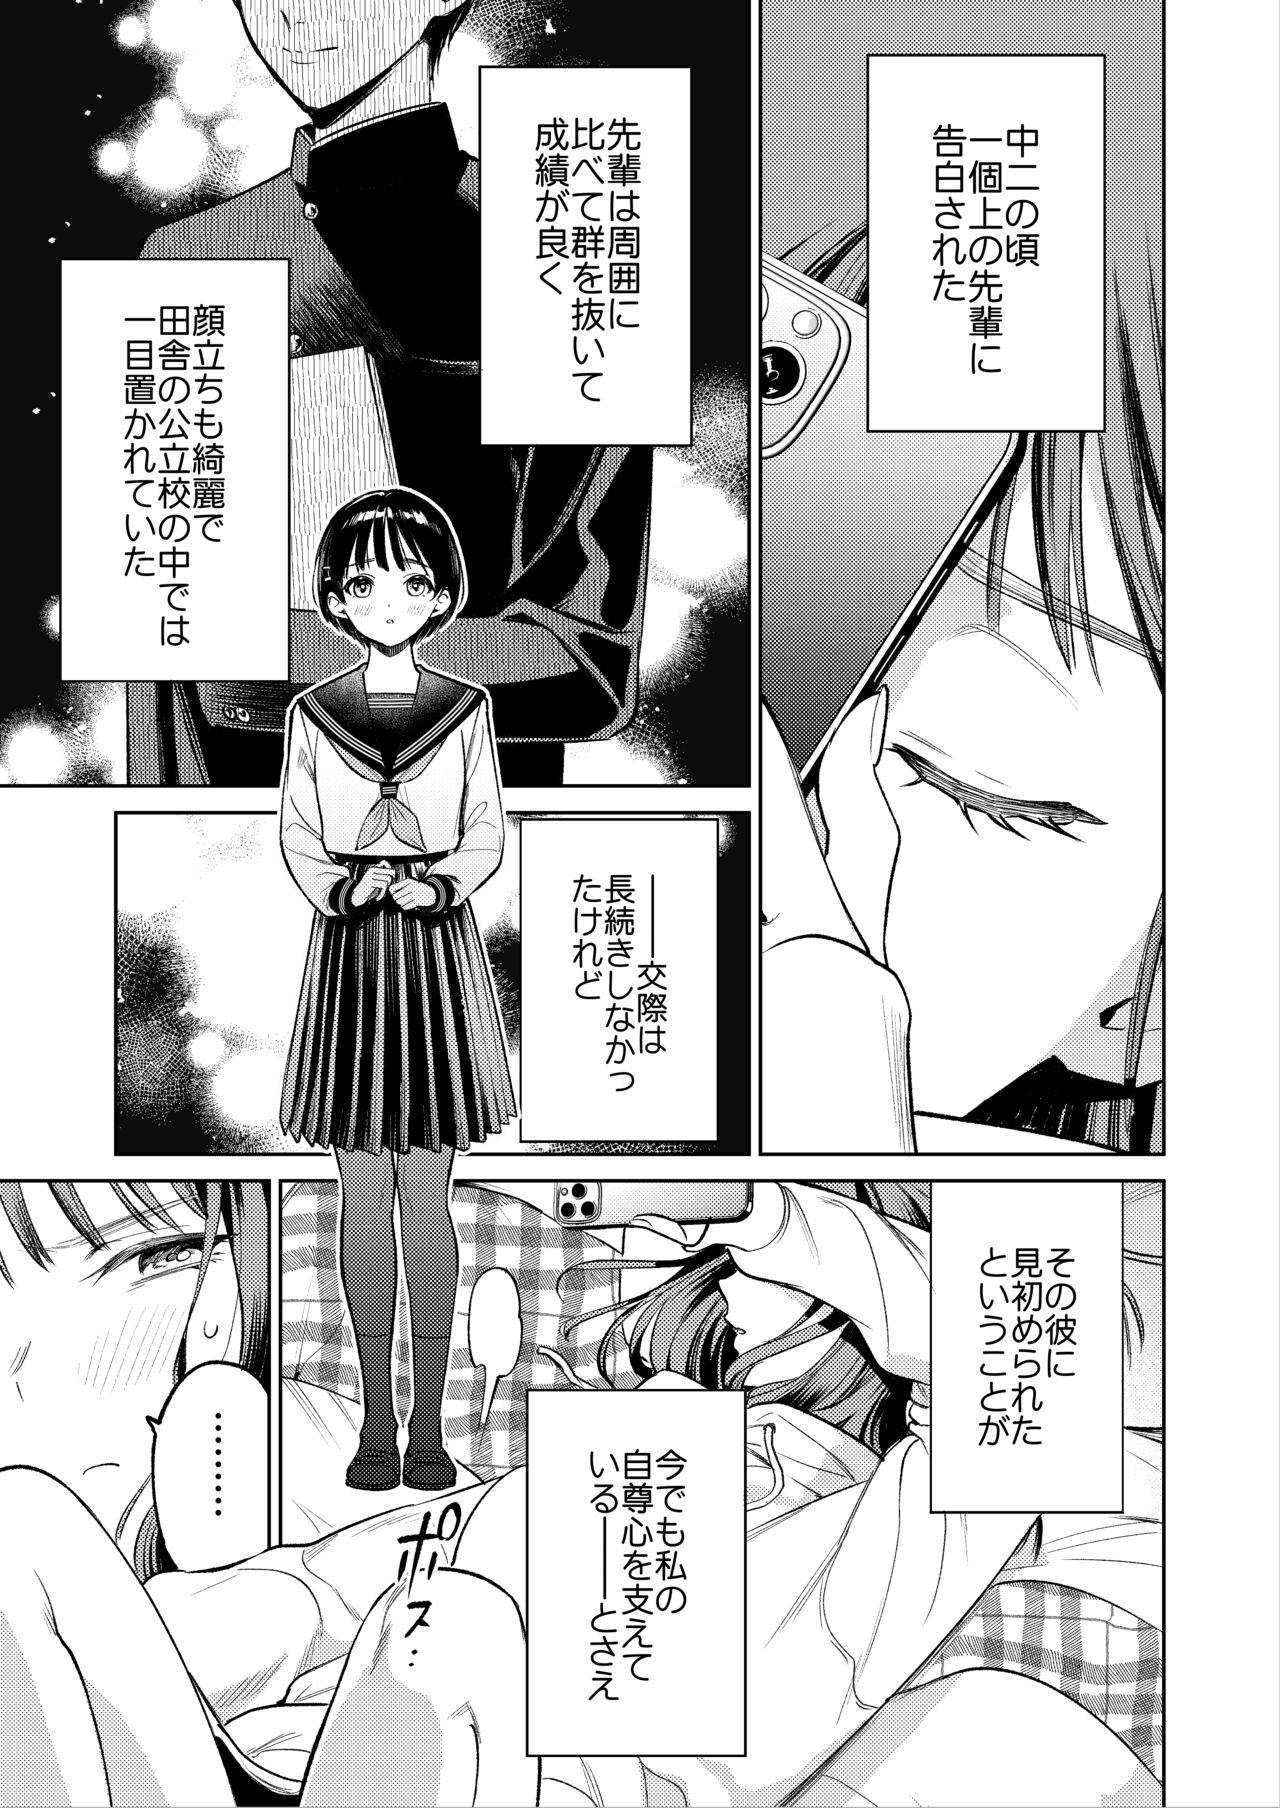 Dirty Senpai, Sonna no Shiranai desu - Original 19yo - Page 10